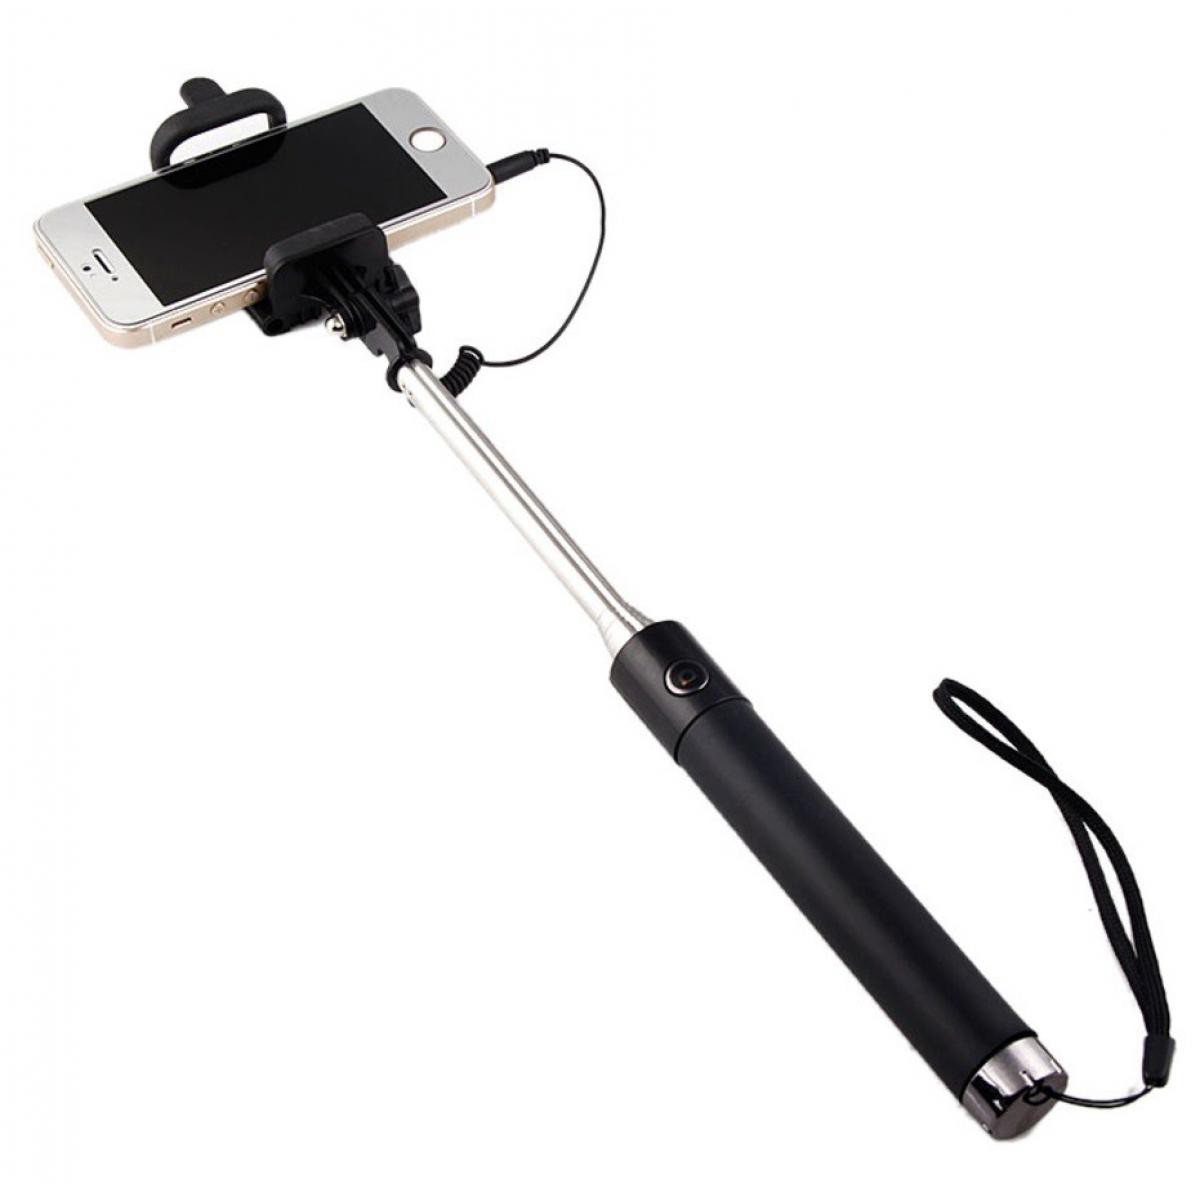 Shot - Perche Selfie Metal pour "SAMSUNG Galaxy XCover Pro" Smartphone avec Cable Jack Selfie Stick Android IOS Reglable Bouton Photo (NOIR) - Autres accessoires smartphone